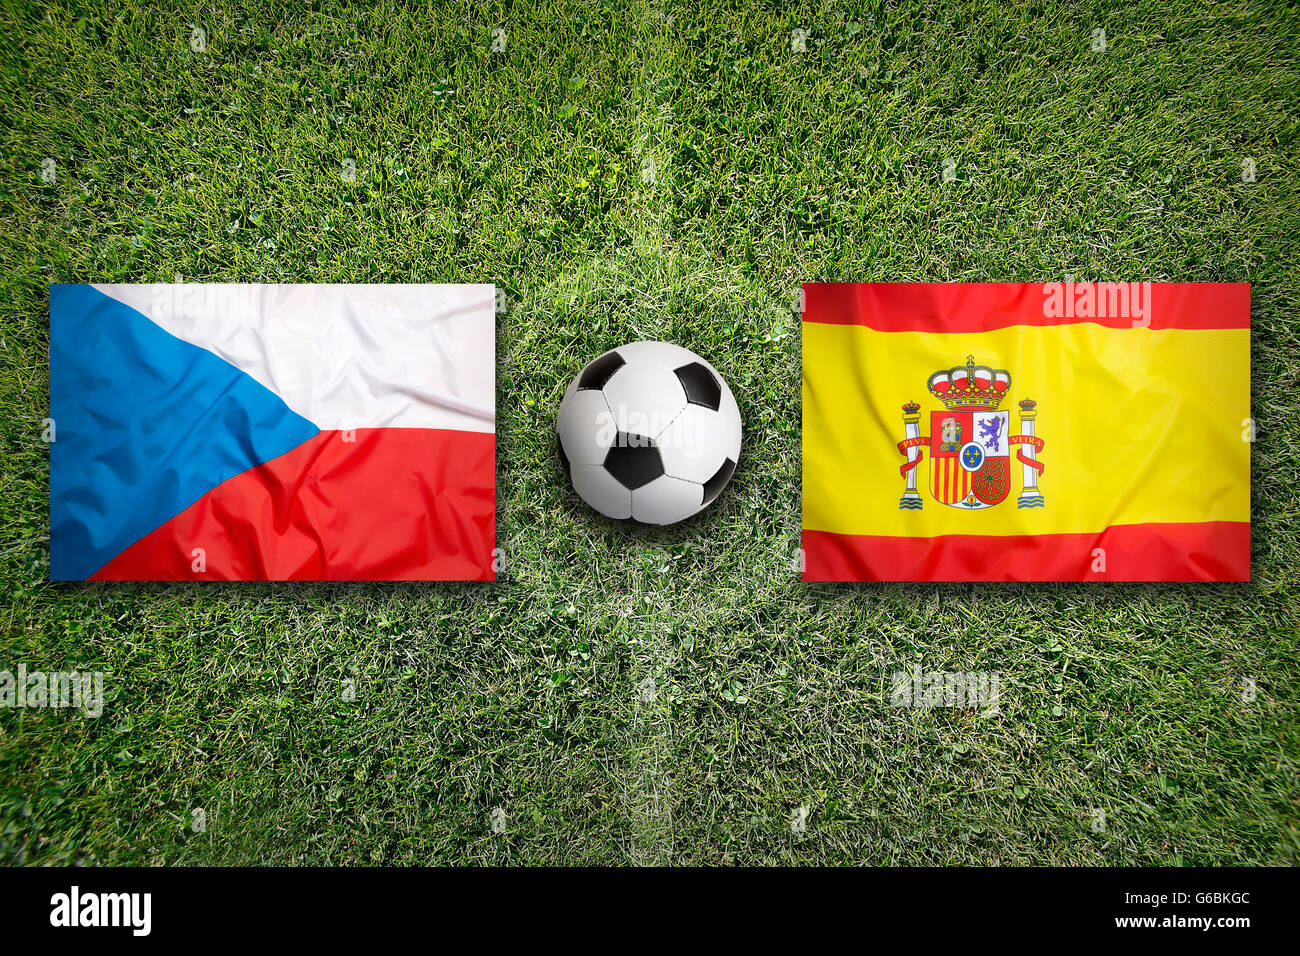 Czech Republic vs. Spain flags on green soccer field Stock Photo